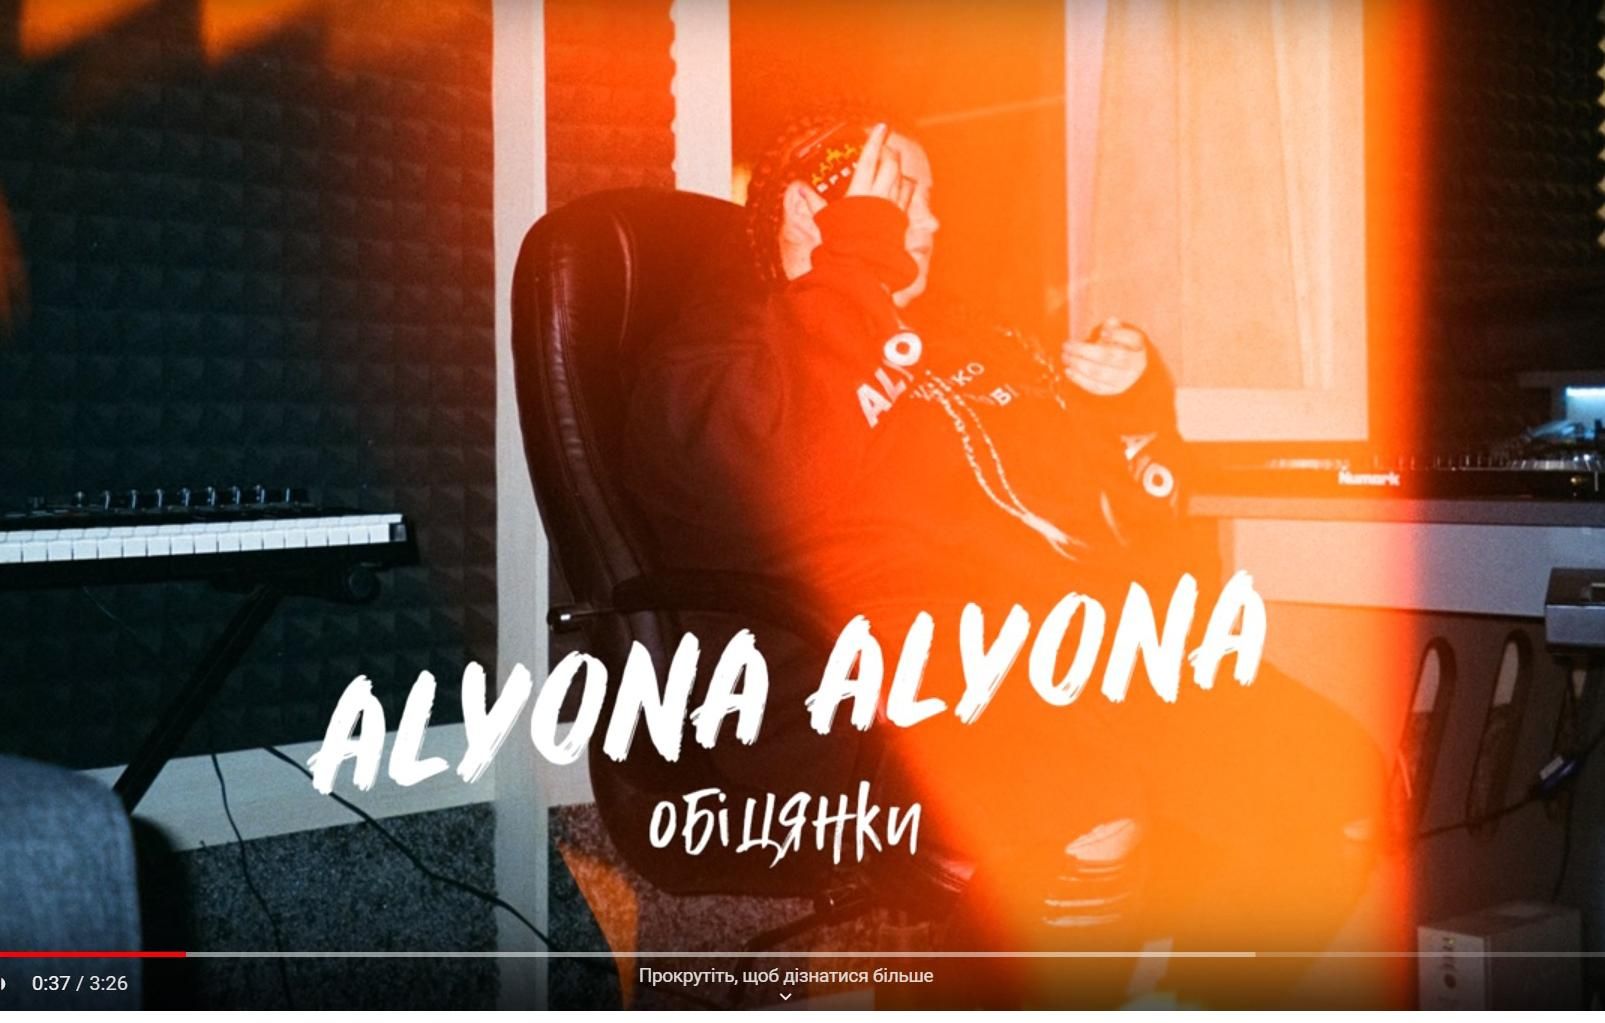 Співачка Alyona Alyona записала пісню після скандалу з форумом Порошенка